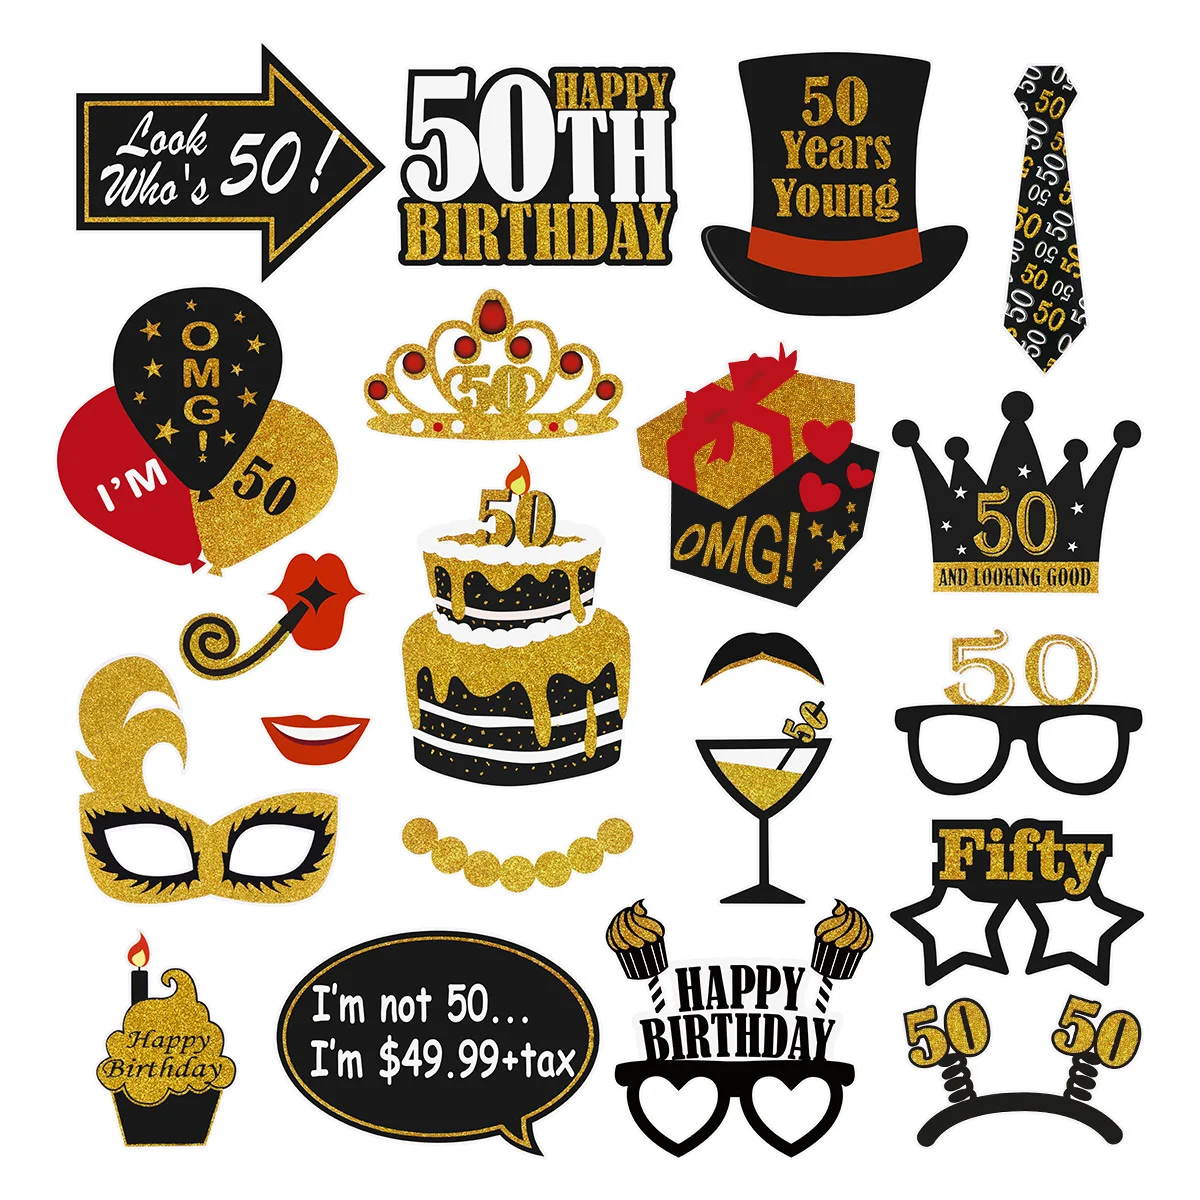 

Набор из 21 предмета для фотосъемки в честь 50-го дня рождения Amosfun, Черное золото, украшение для дня рождения взрослых